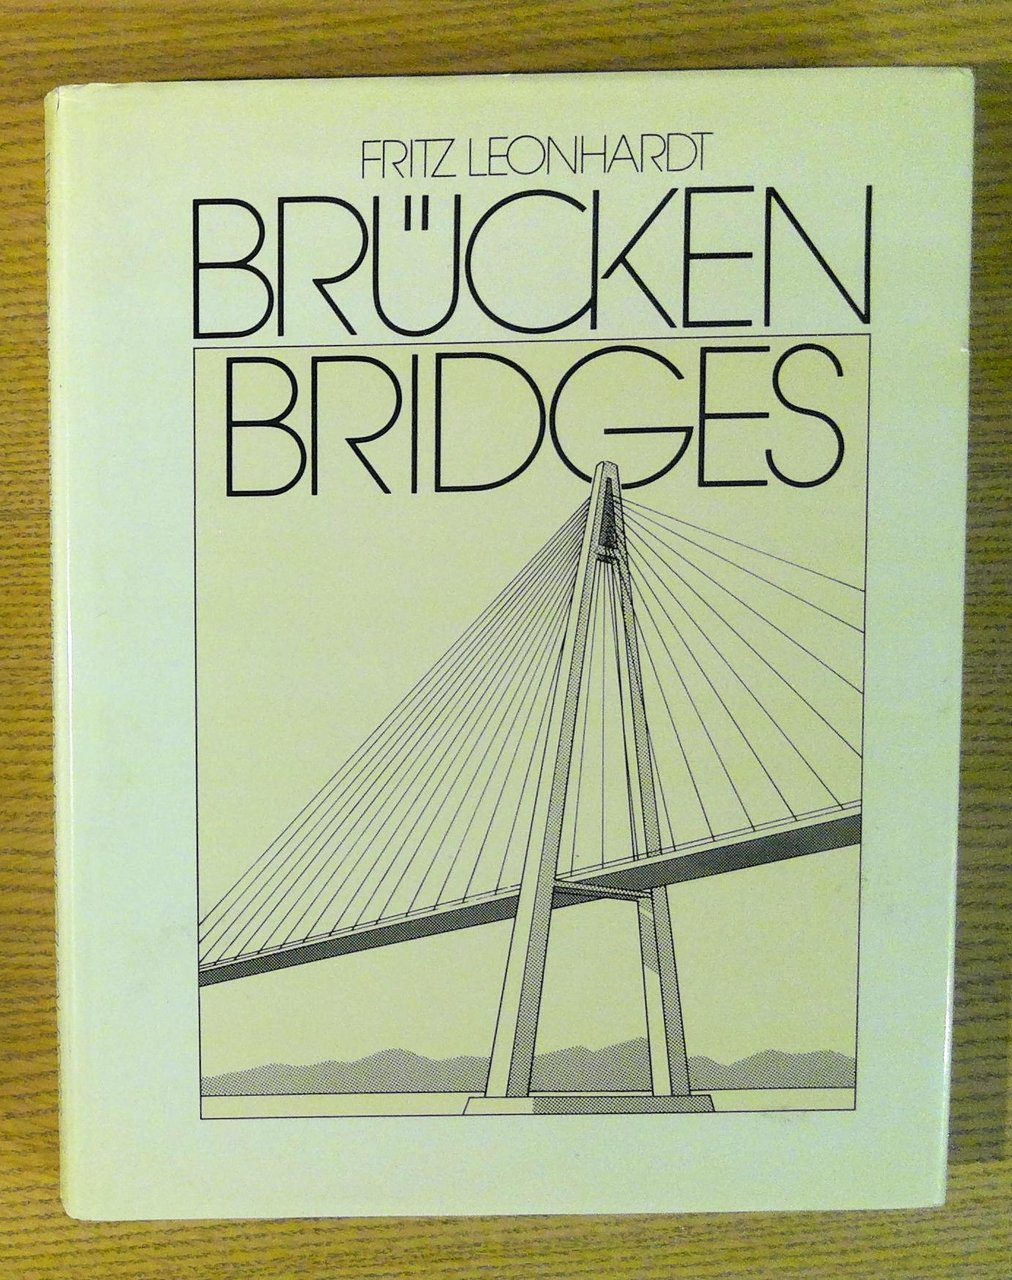 Brucken / Bridges